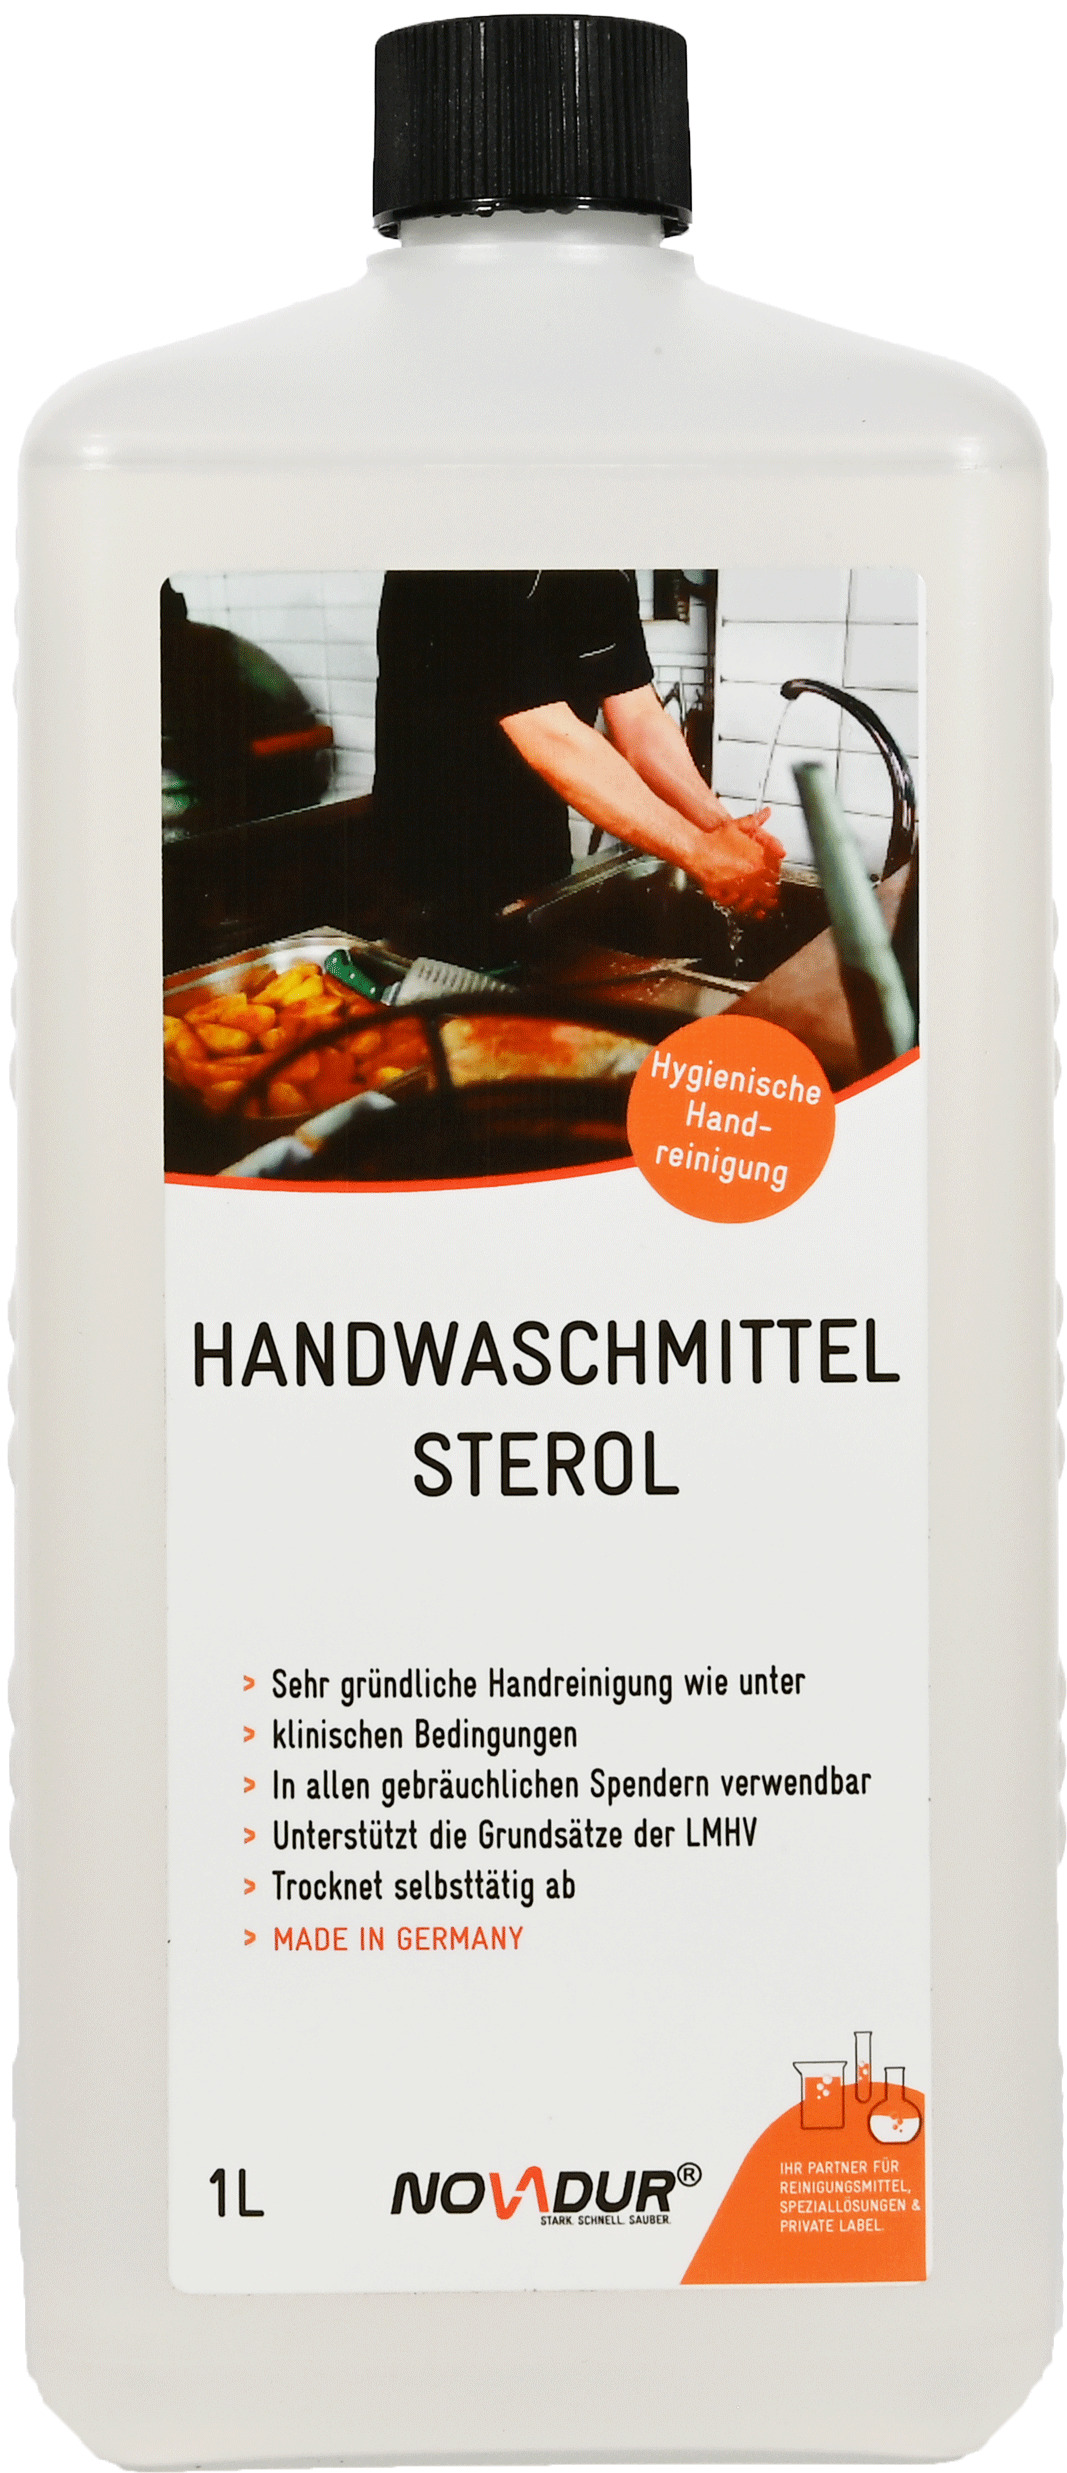 Handwaschmittel Sterol